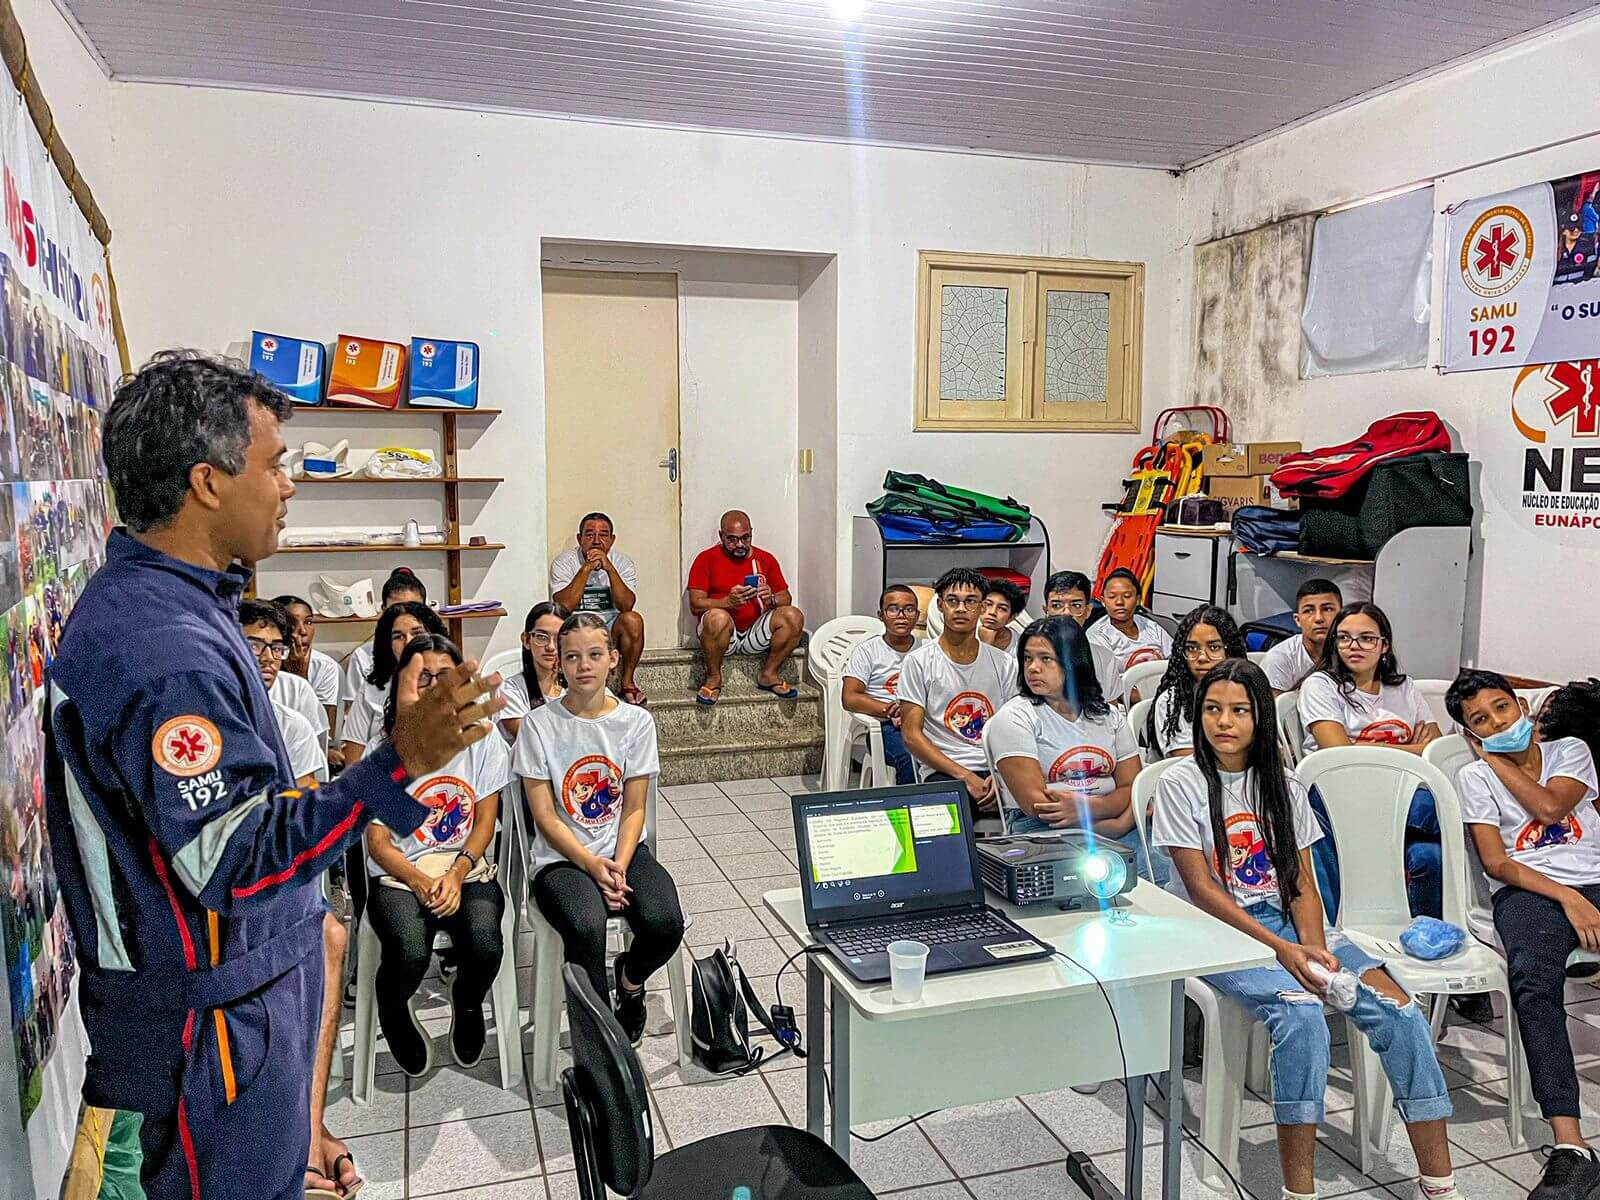 Prefeitura de Eunápolis inicia projeto-piloto “Samuzinho” para estudantes com aulas sobre o SAMU192 7